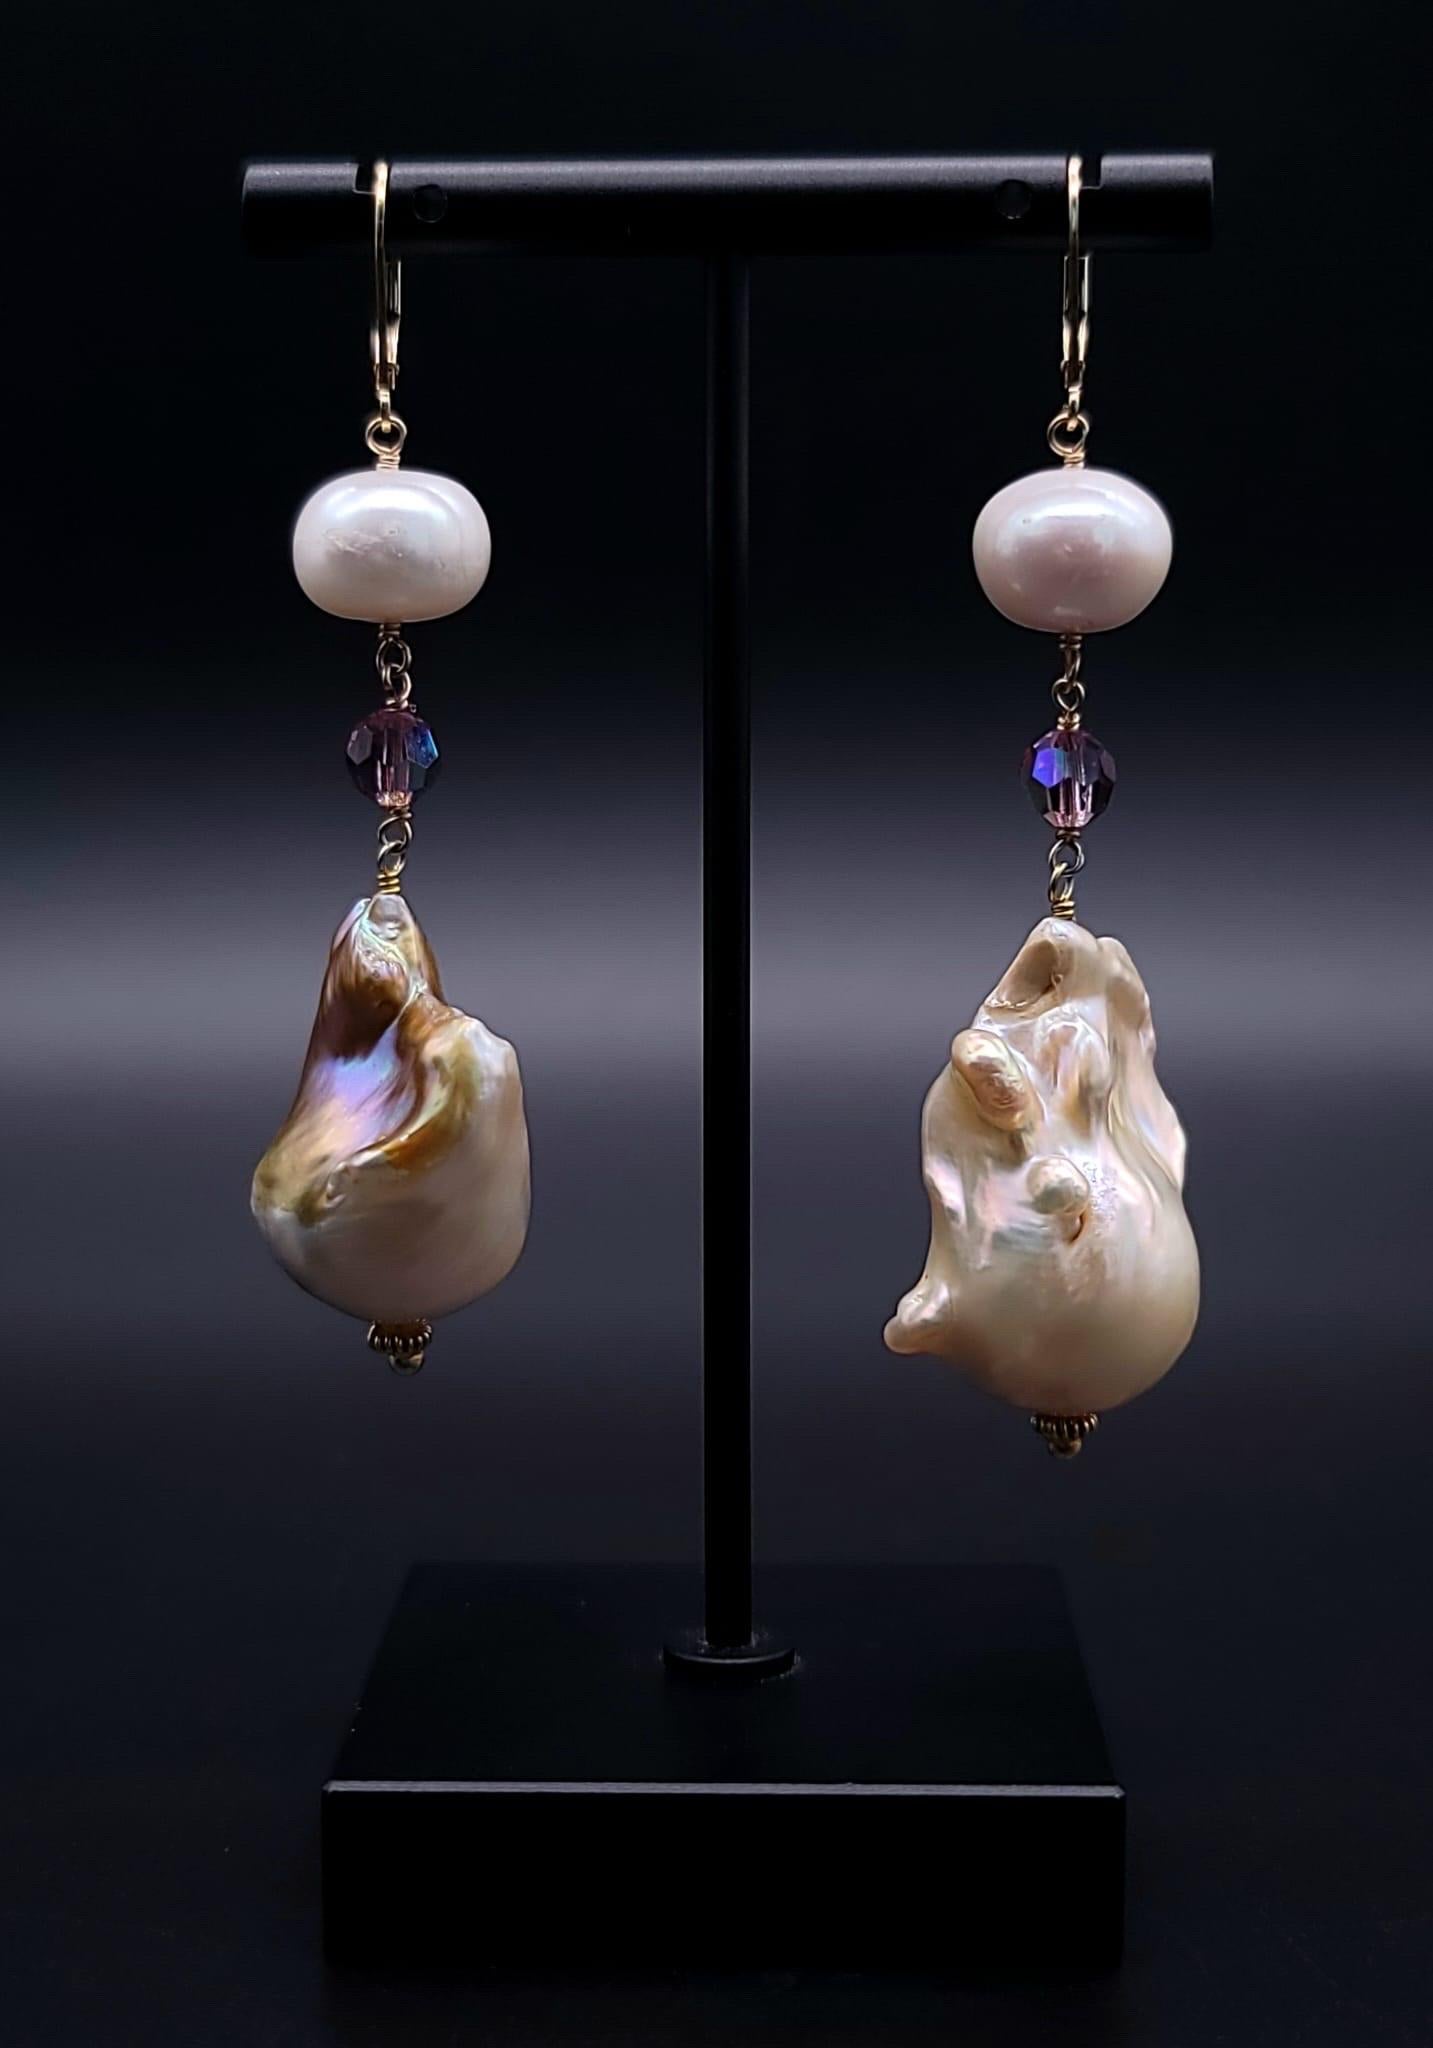 one pearl earring